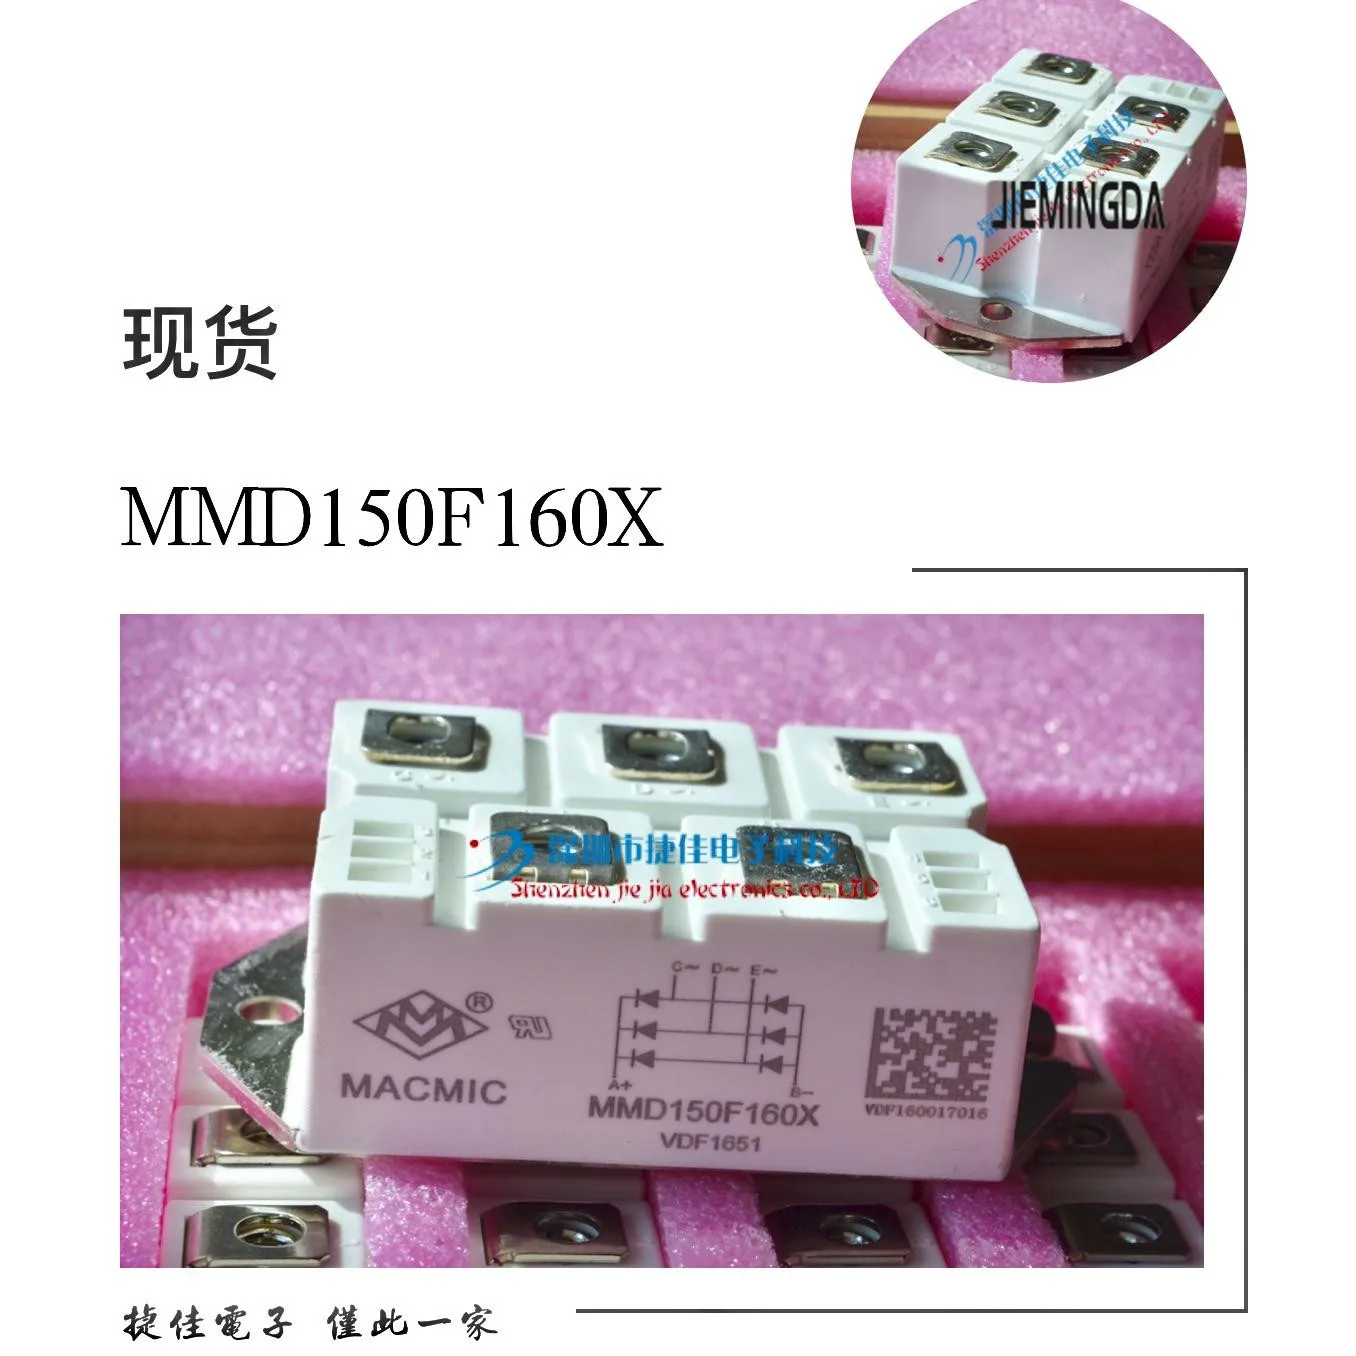 MSD130-16 MSD160-16 MSD100-16 MDS200-16 MMD150F160X 100% nauji ir originalūs - 2